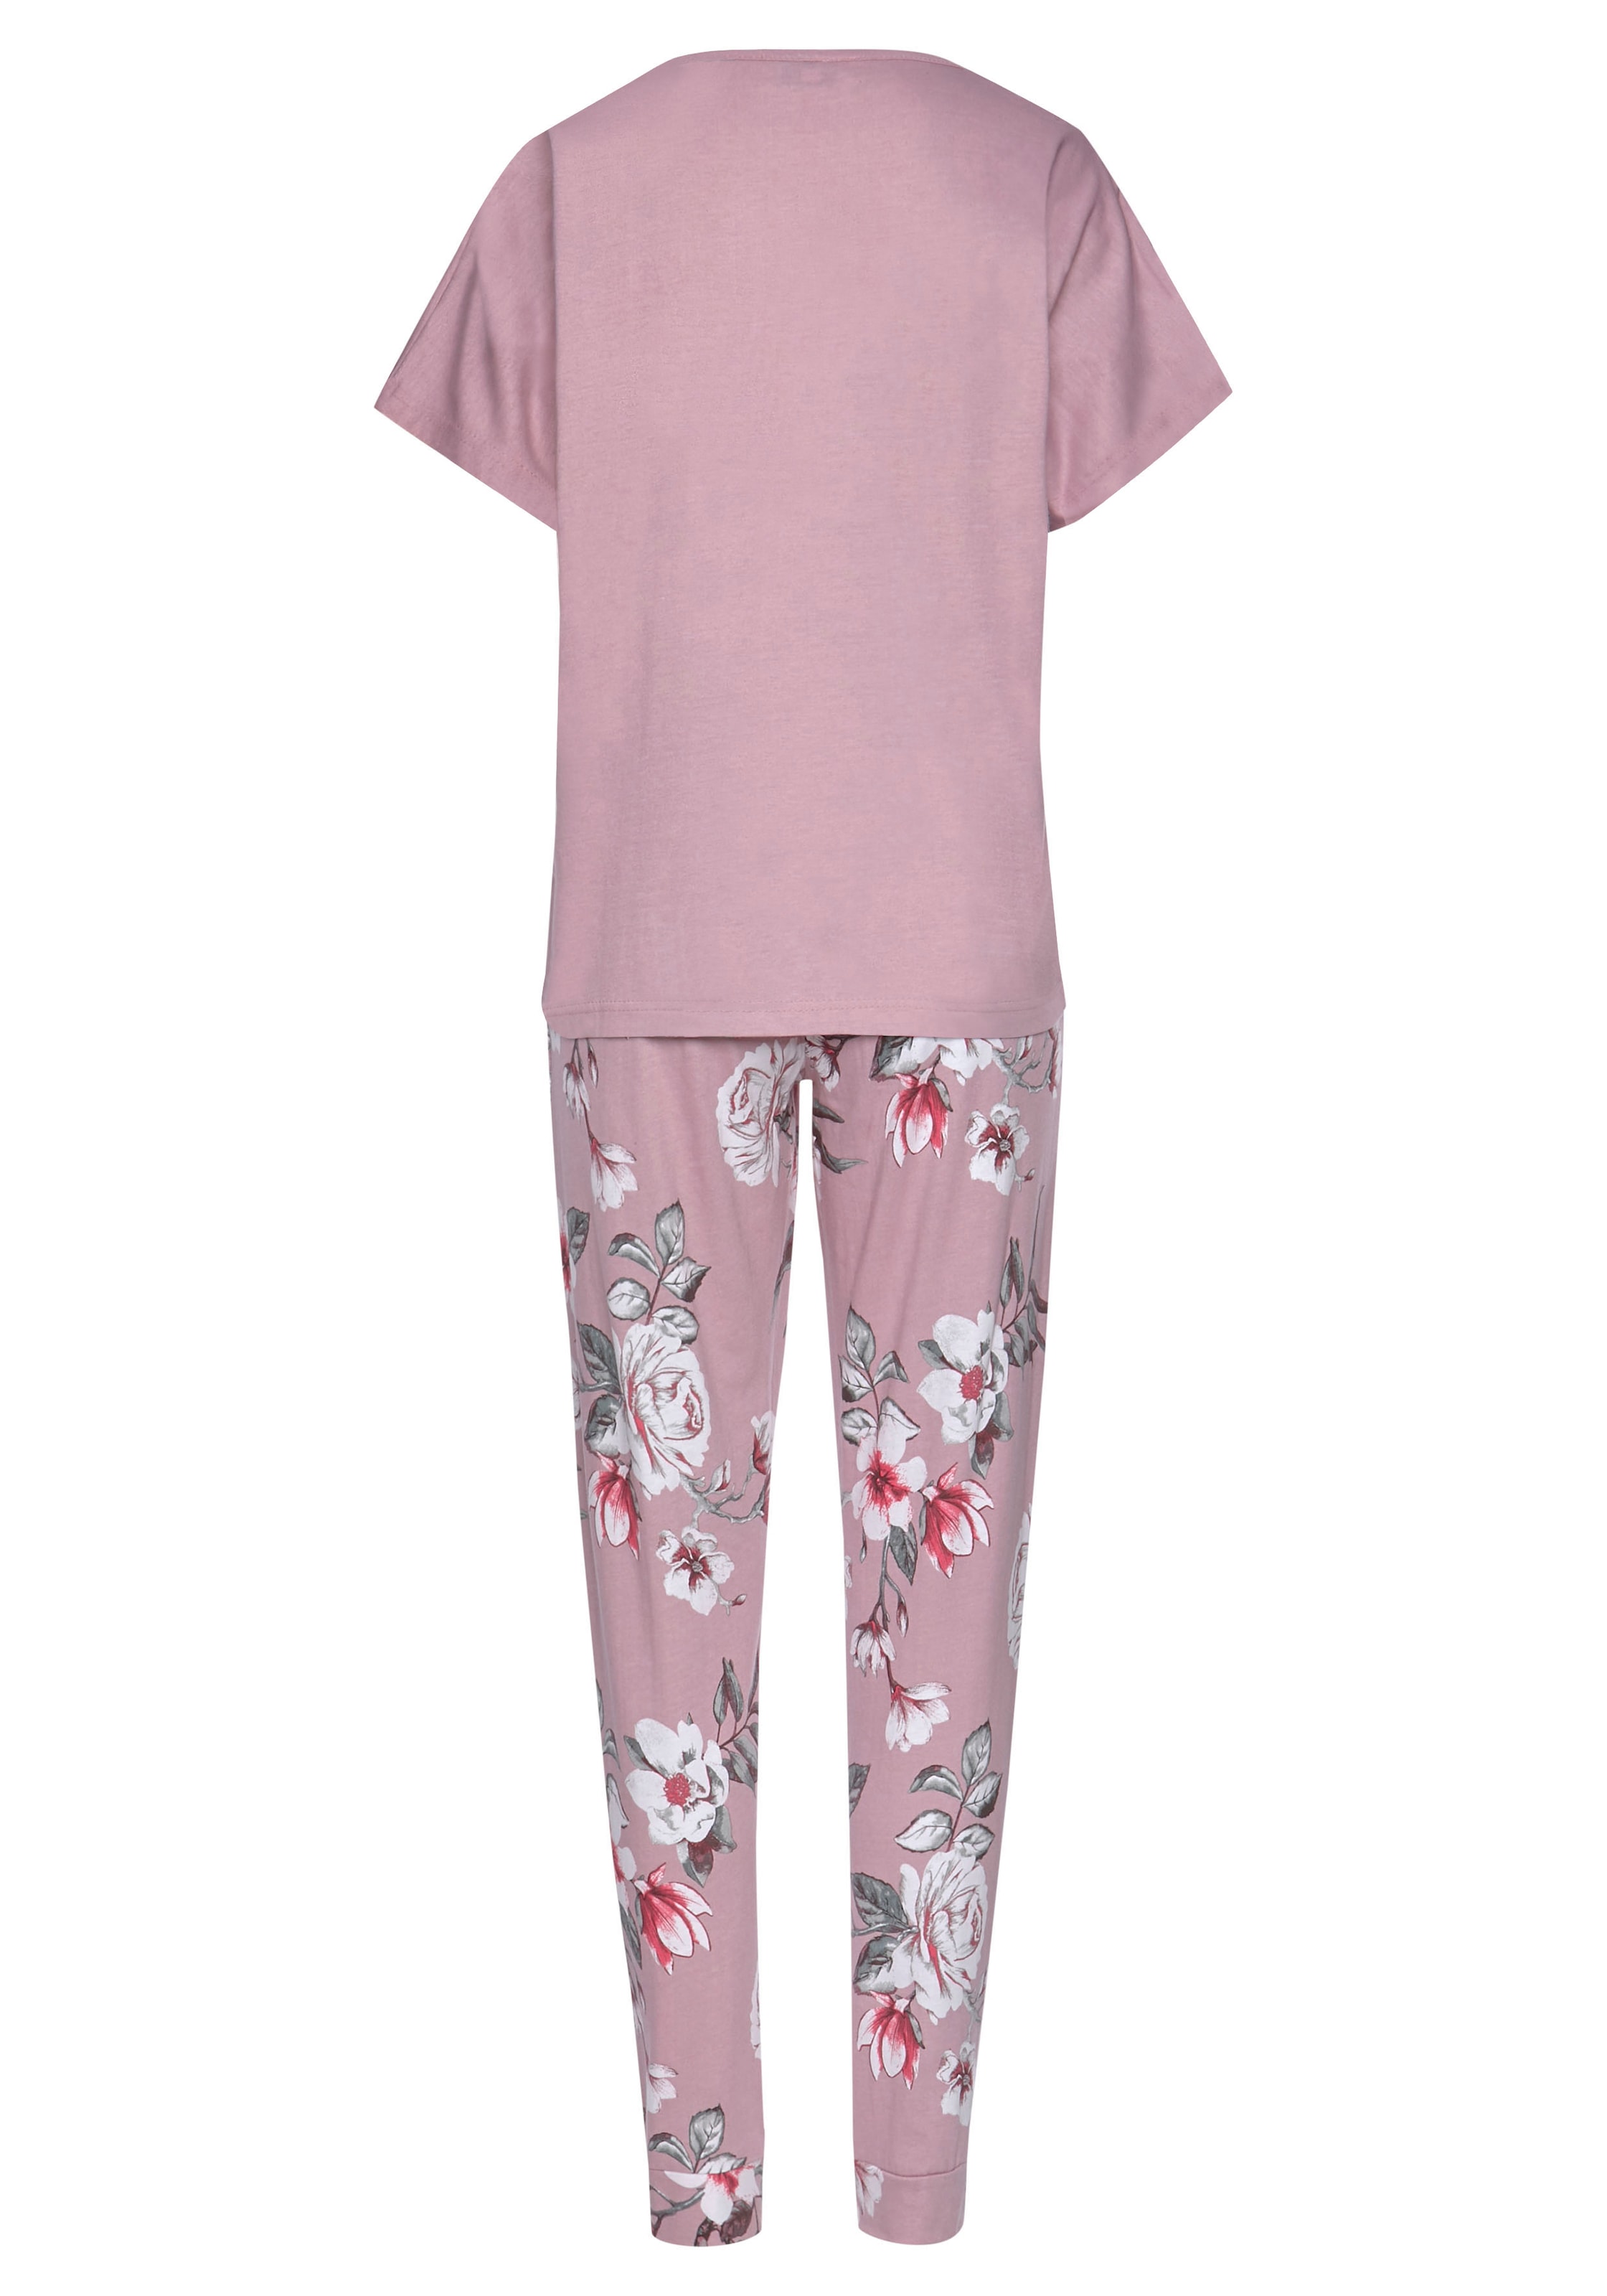 Vivance Dreams Pyjama, (2 tlg.), mit Blumendruck